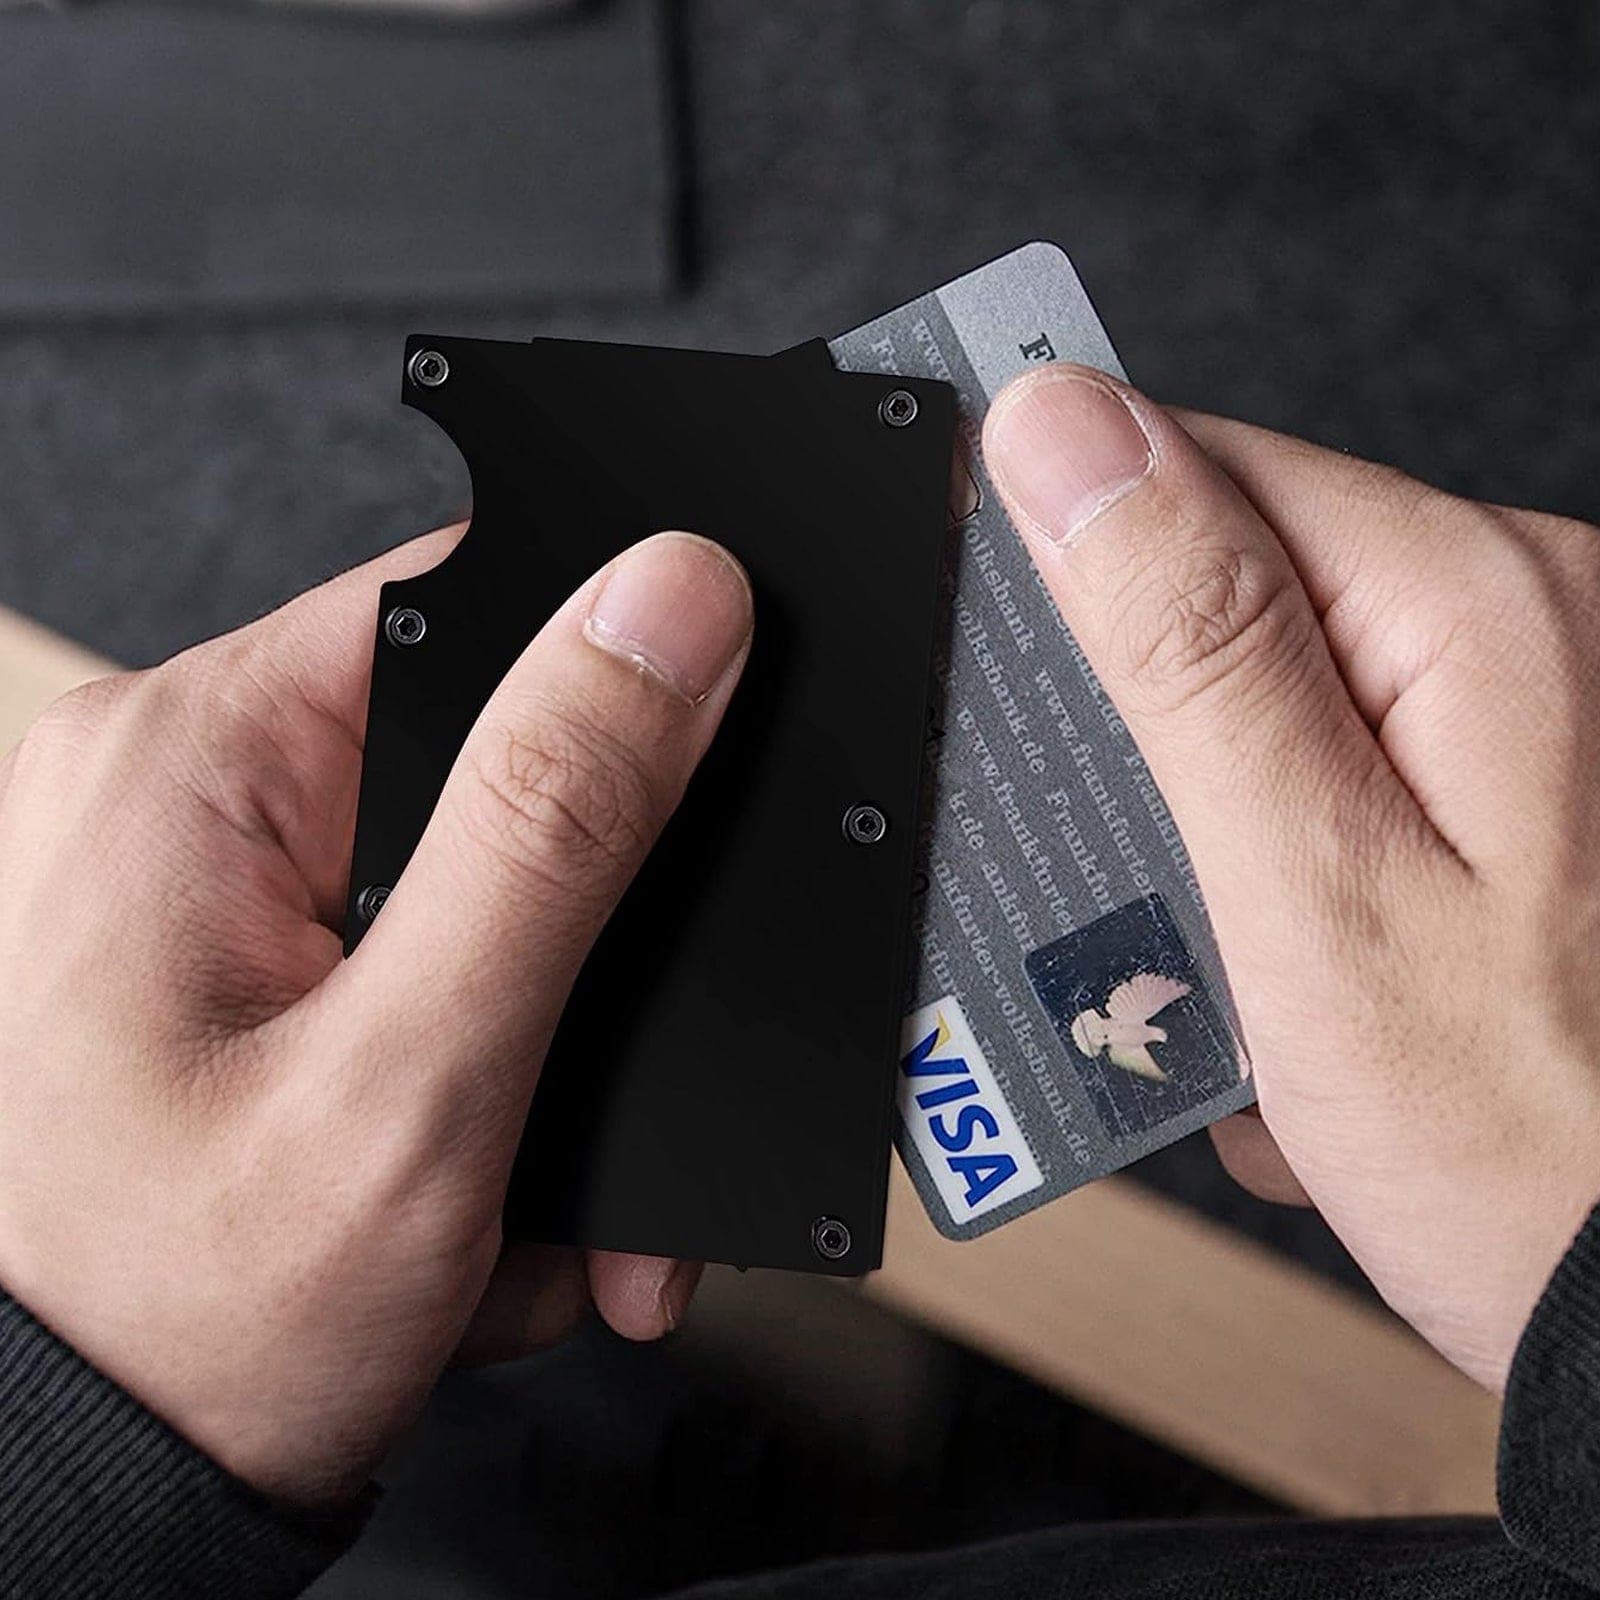 2 Packs Metal Wallet Card Holder